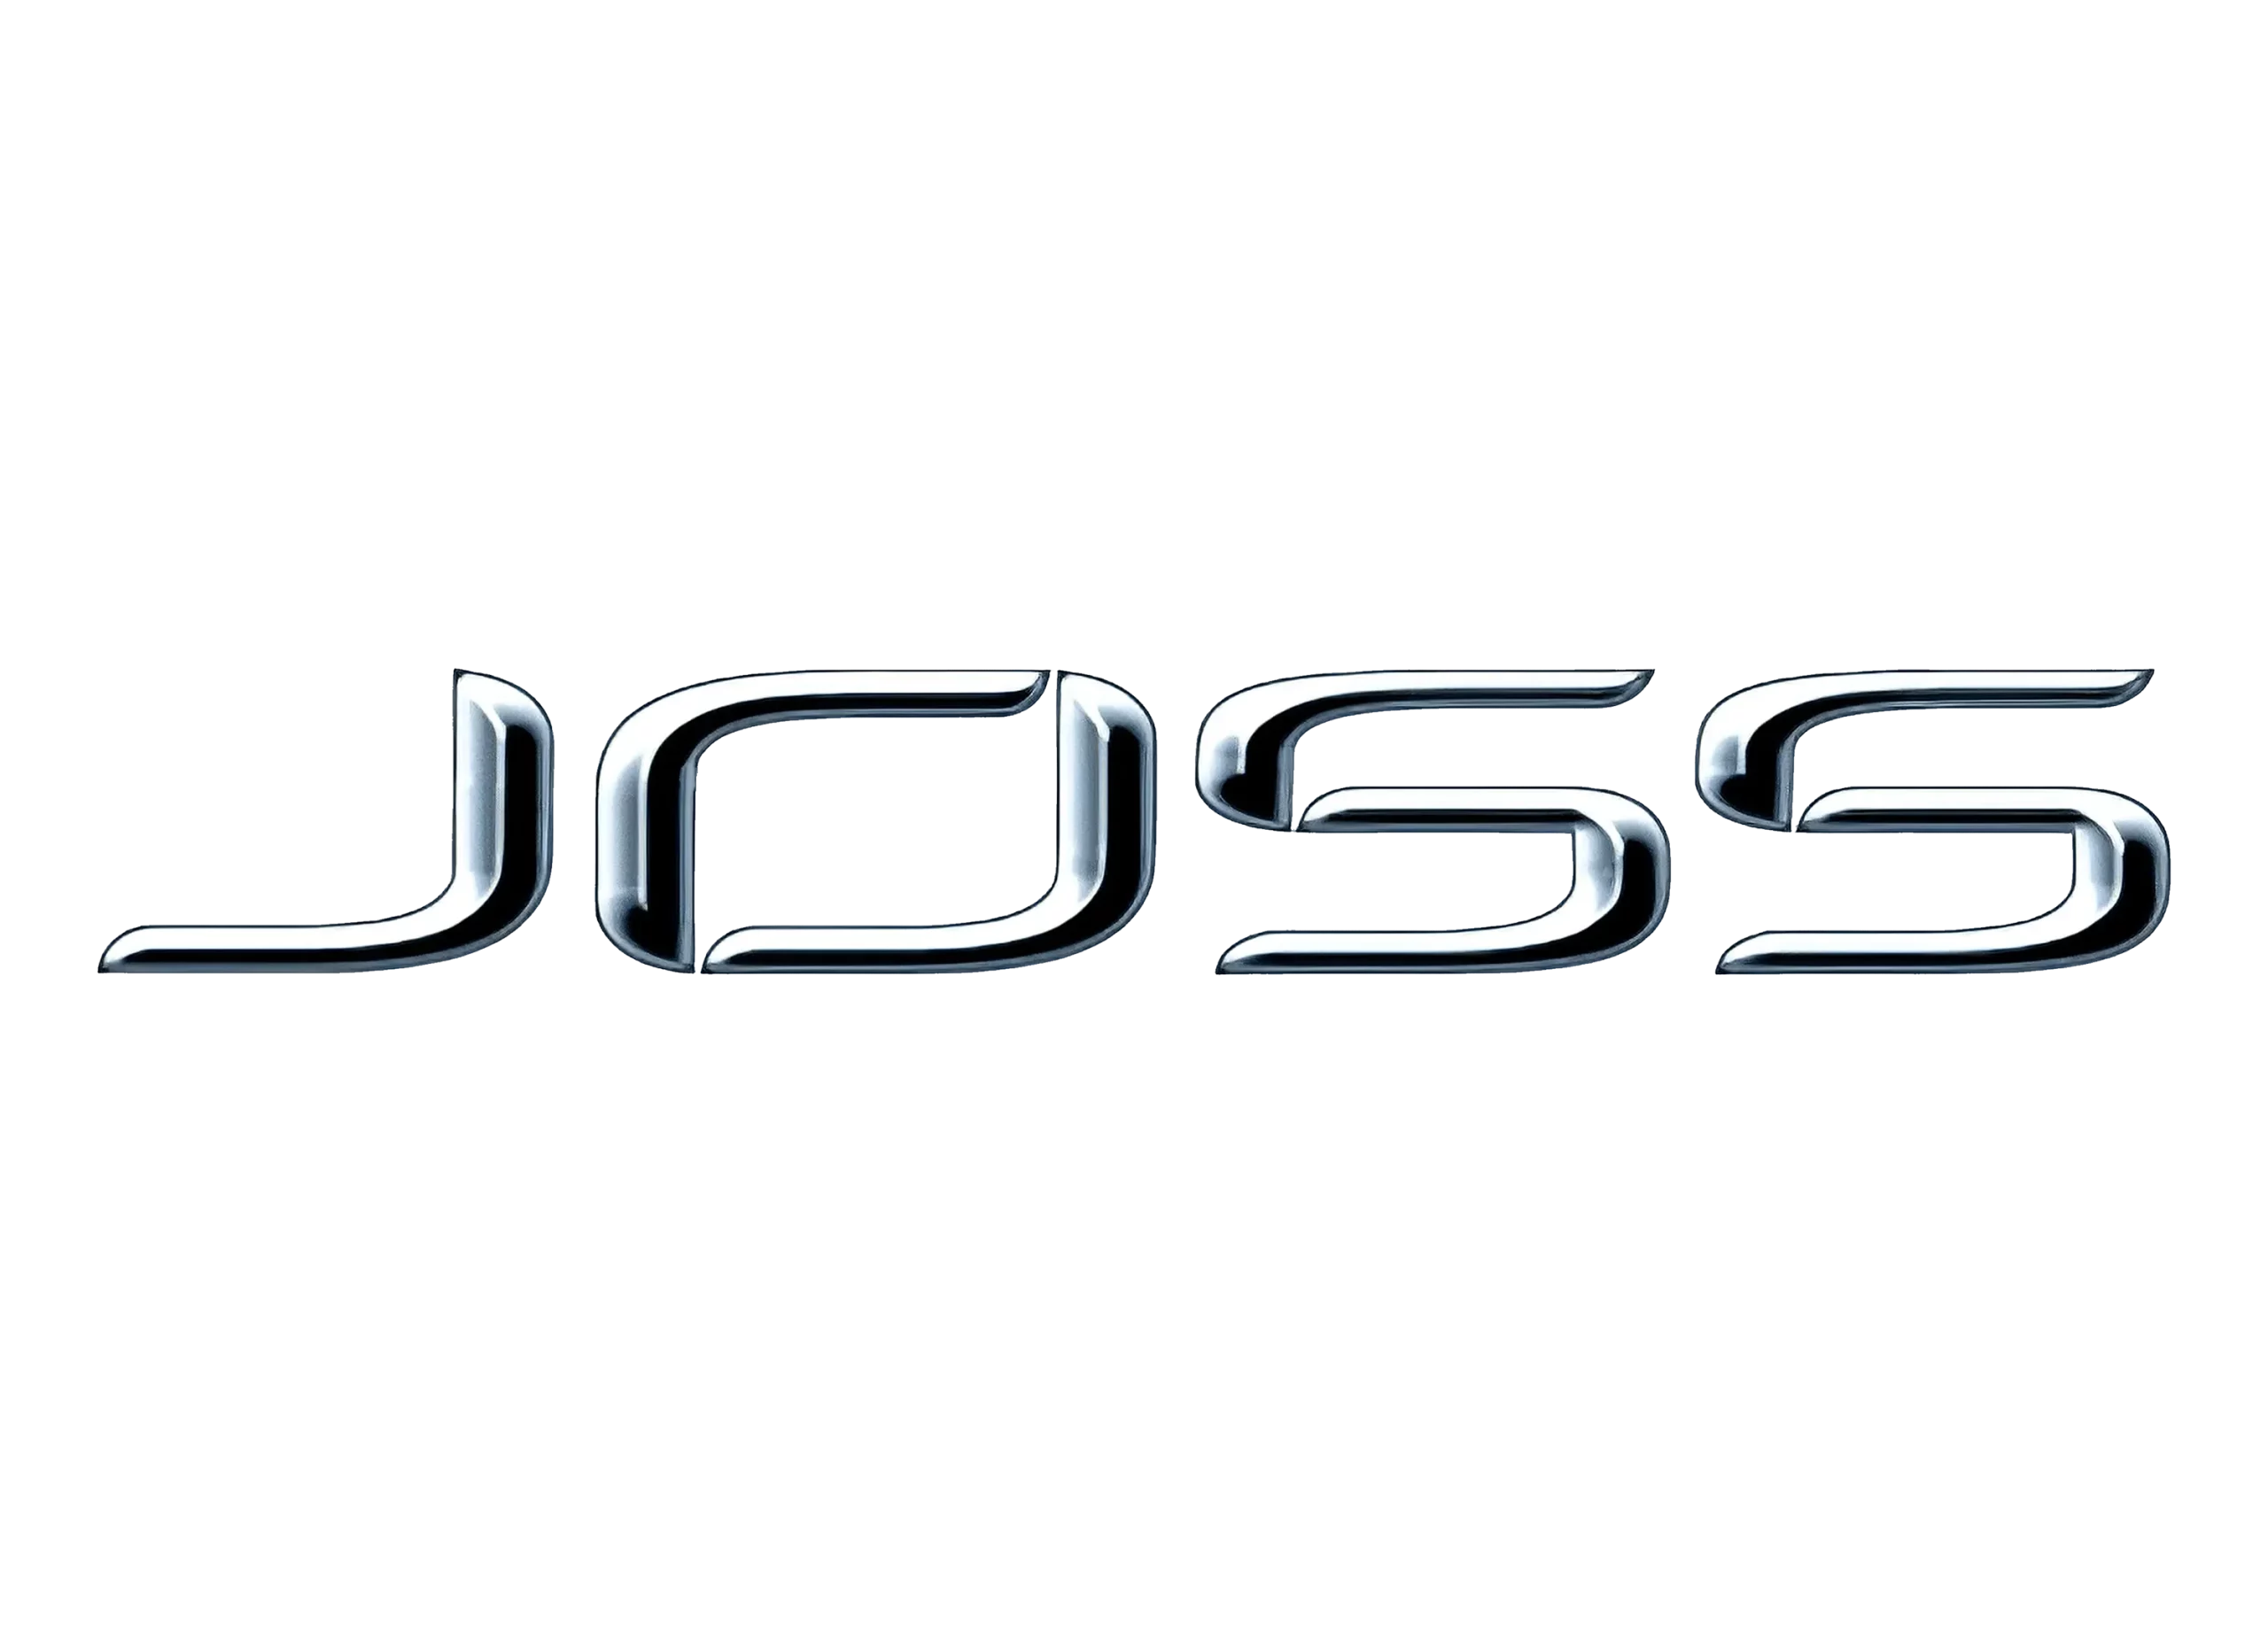 Joss logo 1999-present